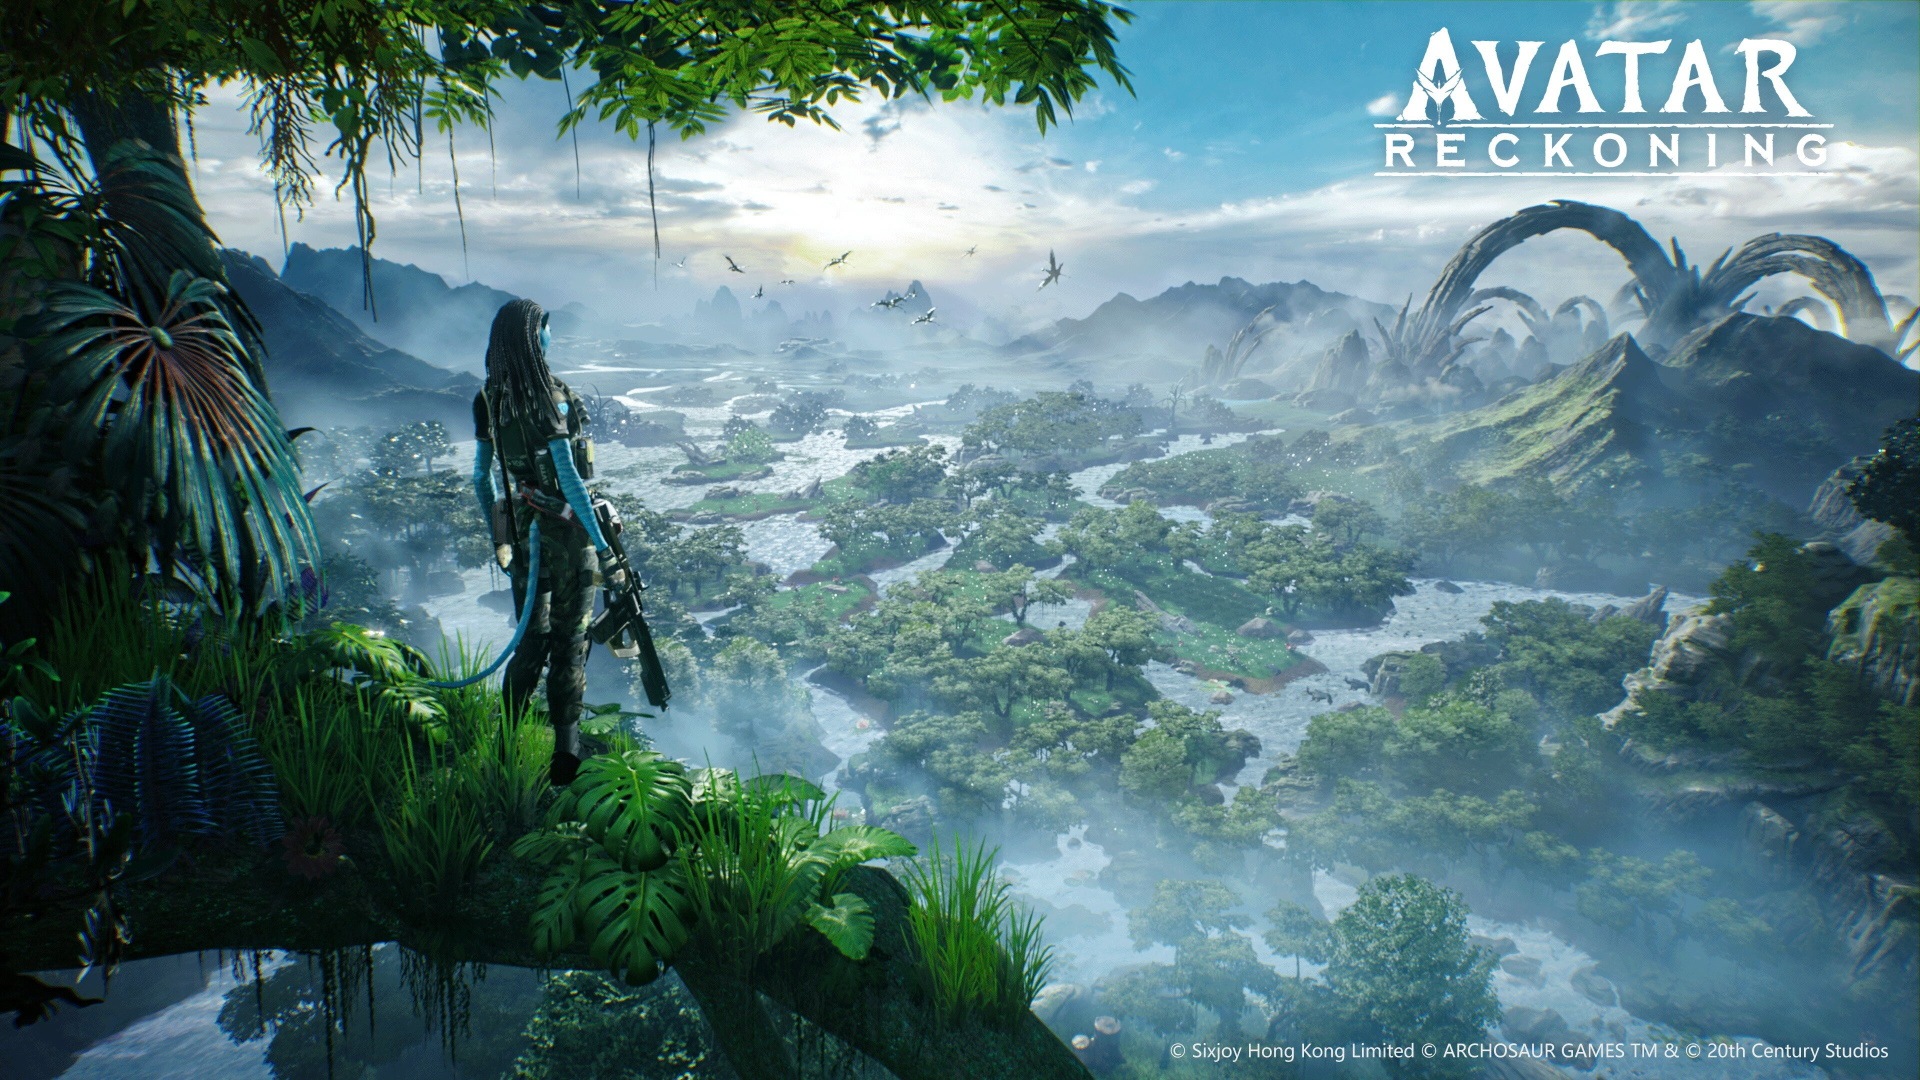 Hợp tác giữa Disney và Avatar - Sự hợp tác giữa Disney và Avatar đã thực sự là một bước đột phá trên thị trường giải trí. Các bộ phim Avatar đã góp phần tạo nên kỷ nguyên mới cho đế chế giải trí này. Năm 2024, cùng theo dõi các sản phẩm kế tiếp của sự hợp tác này và tận hưởng những khoảnh khắc giải trí tuyệt vời nhất.